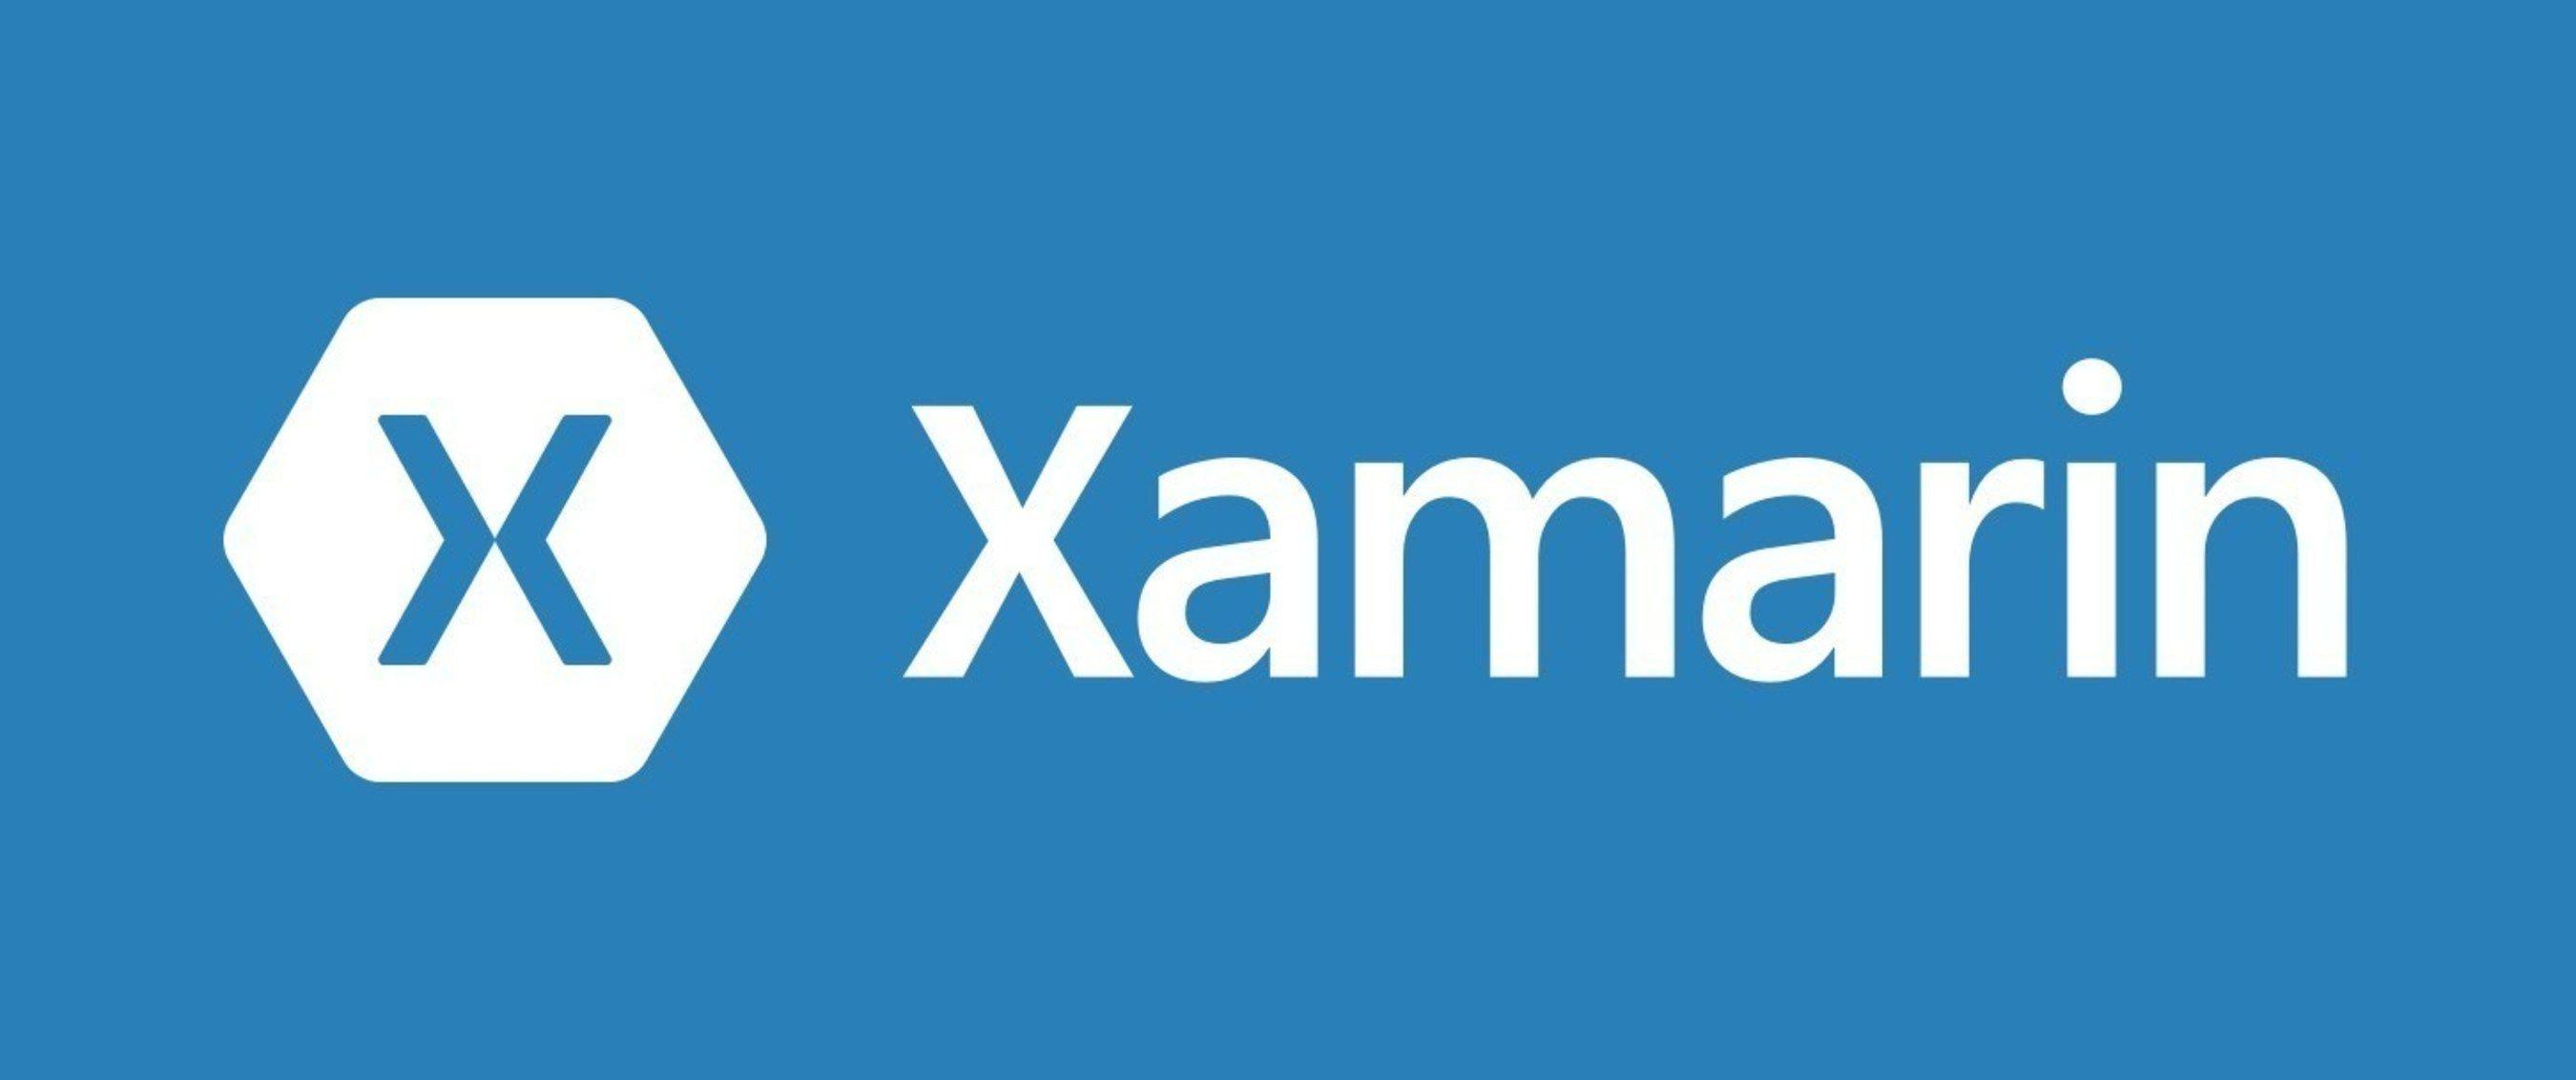 Xamarin Logo - Xamarin Microsoft Logo - Year of Clean Water